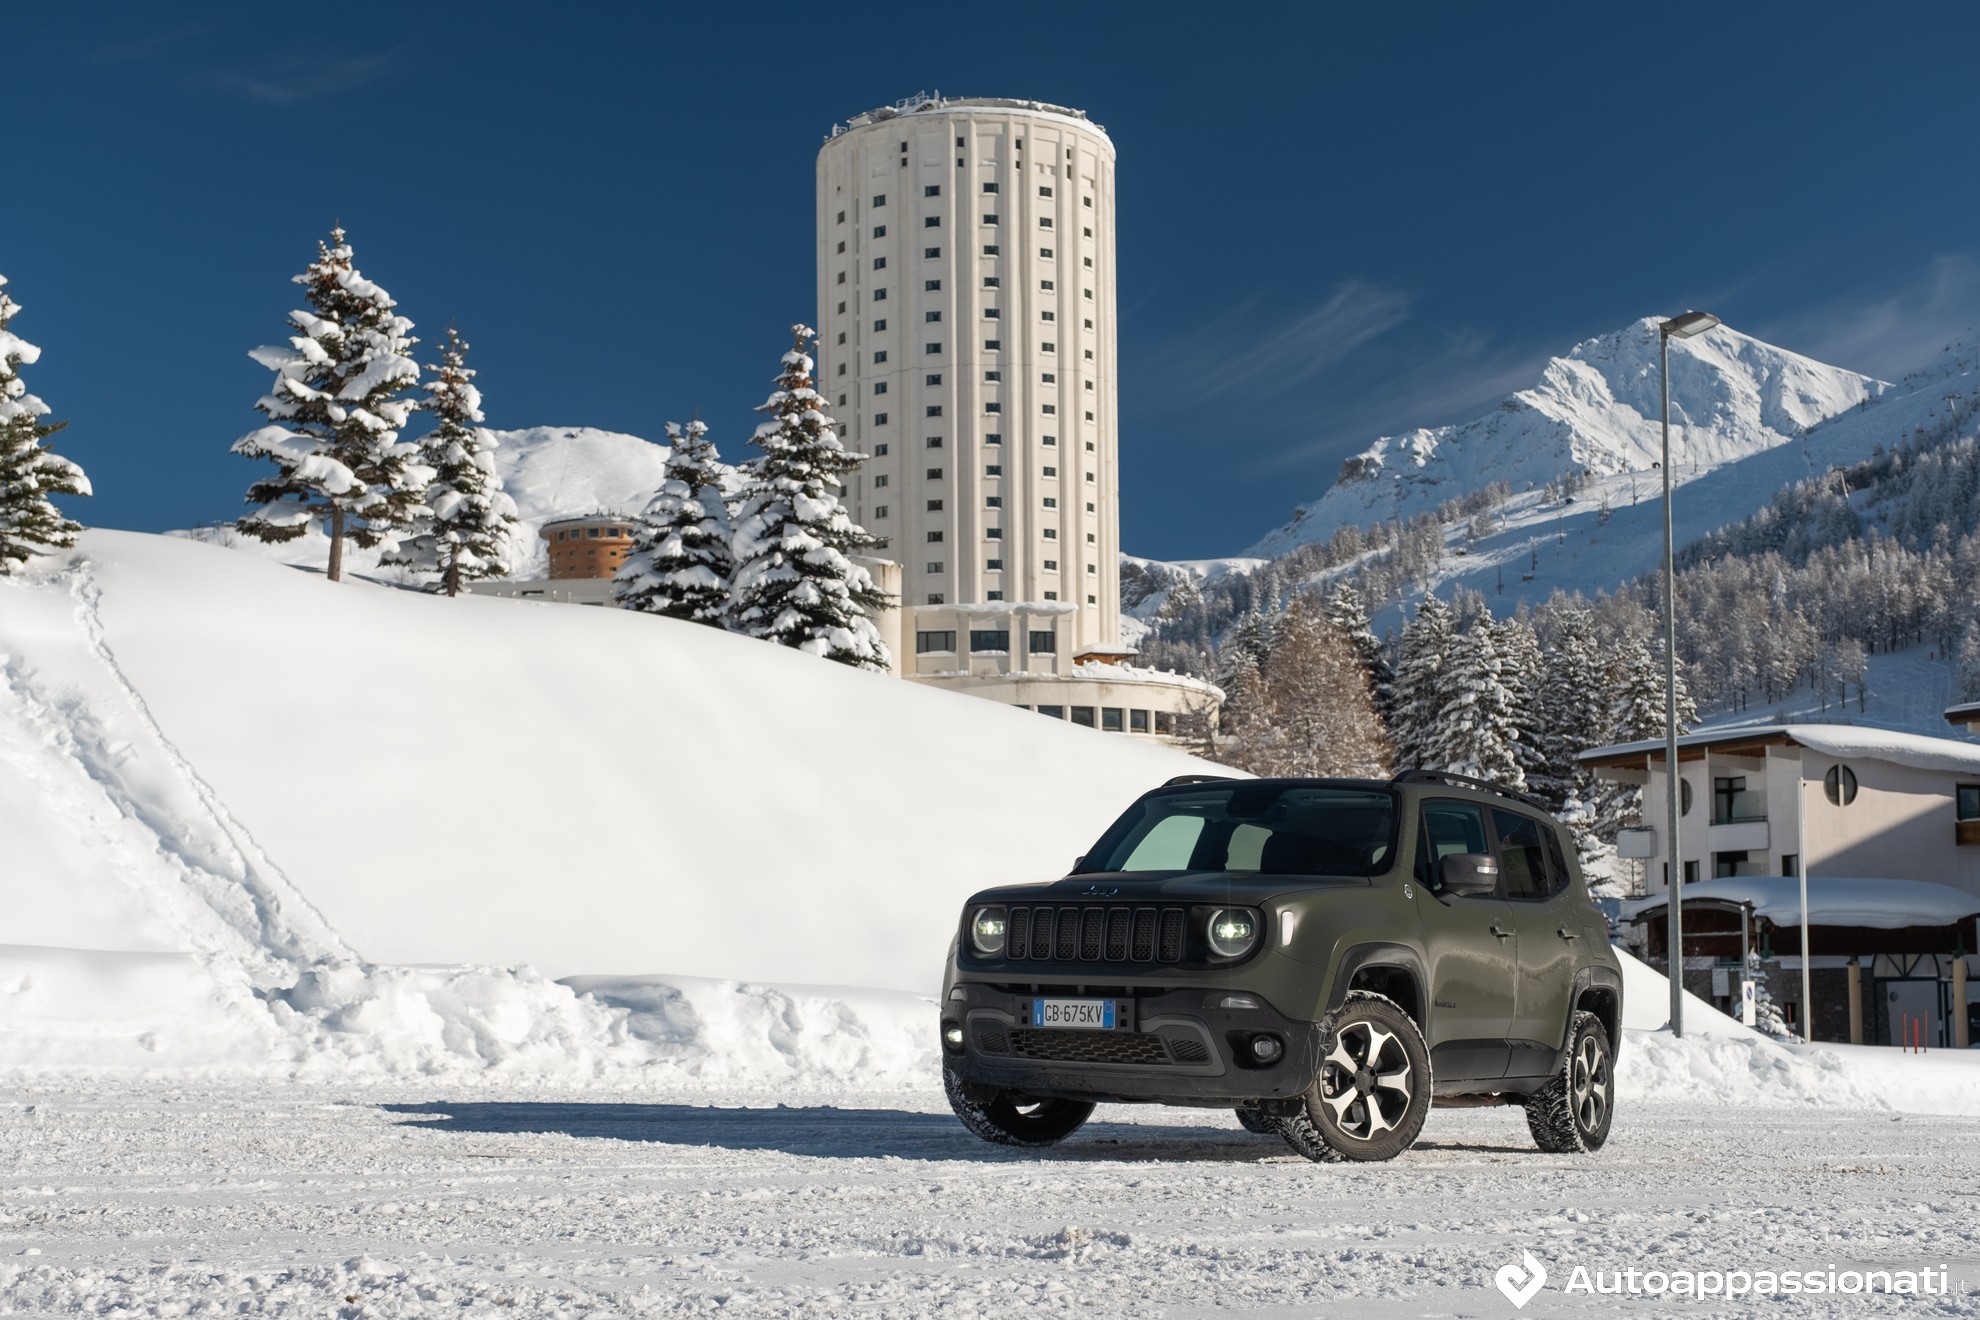 Neve, montagne e fortezze: il Piemonte a bordo della Jeep Renegade 4xe | Percorsi Italiani